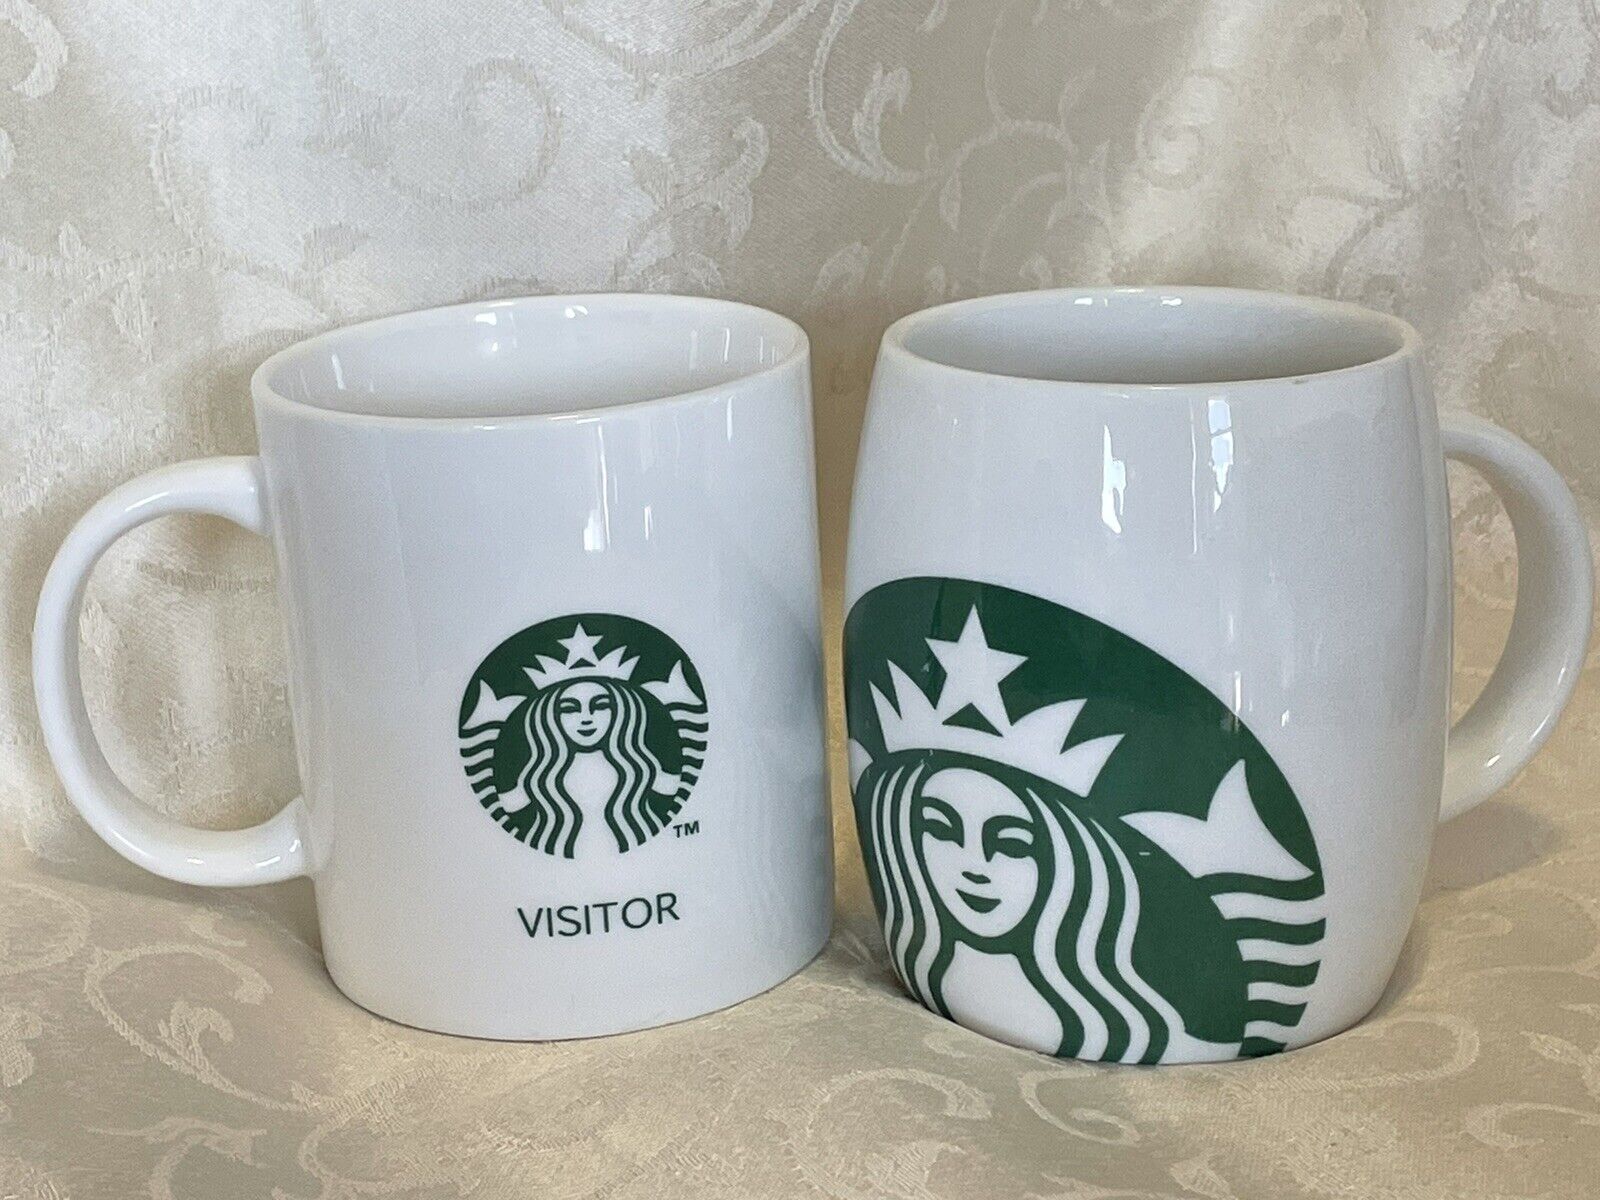 2010 starbucks coffee mug And Visitor Starbucks Mug Set Of Two